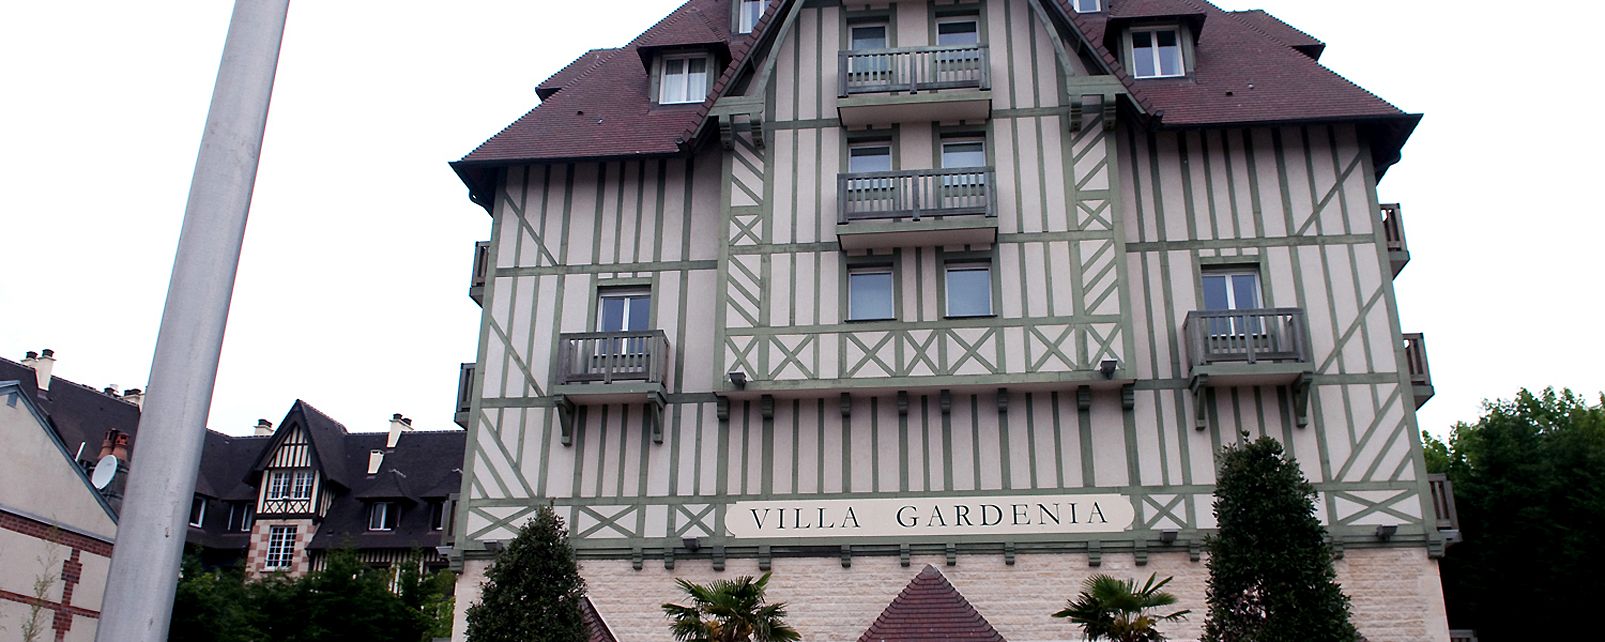 Hôtel Pierre & Vacances La Villa Gardenia